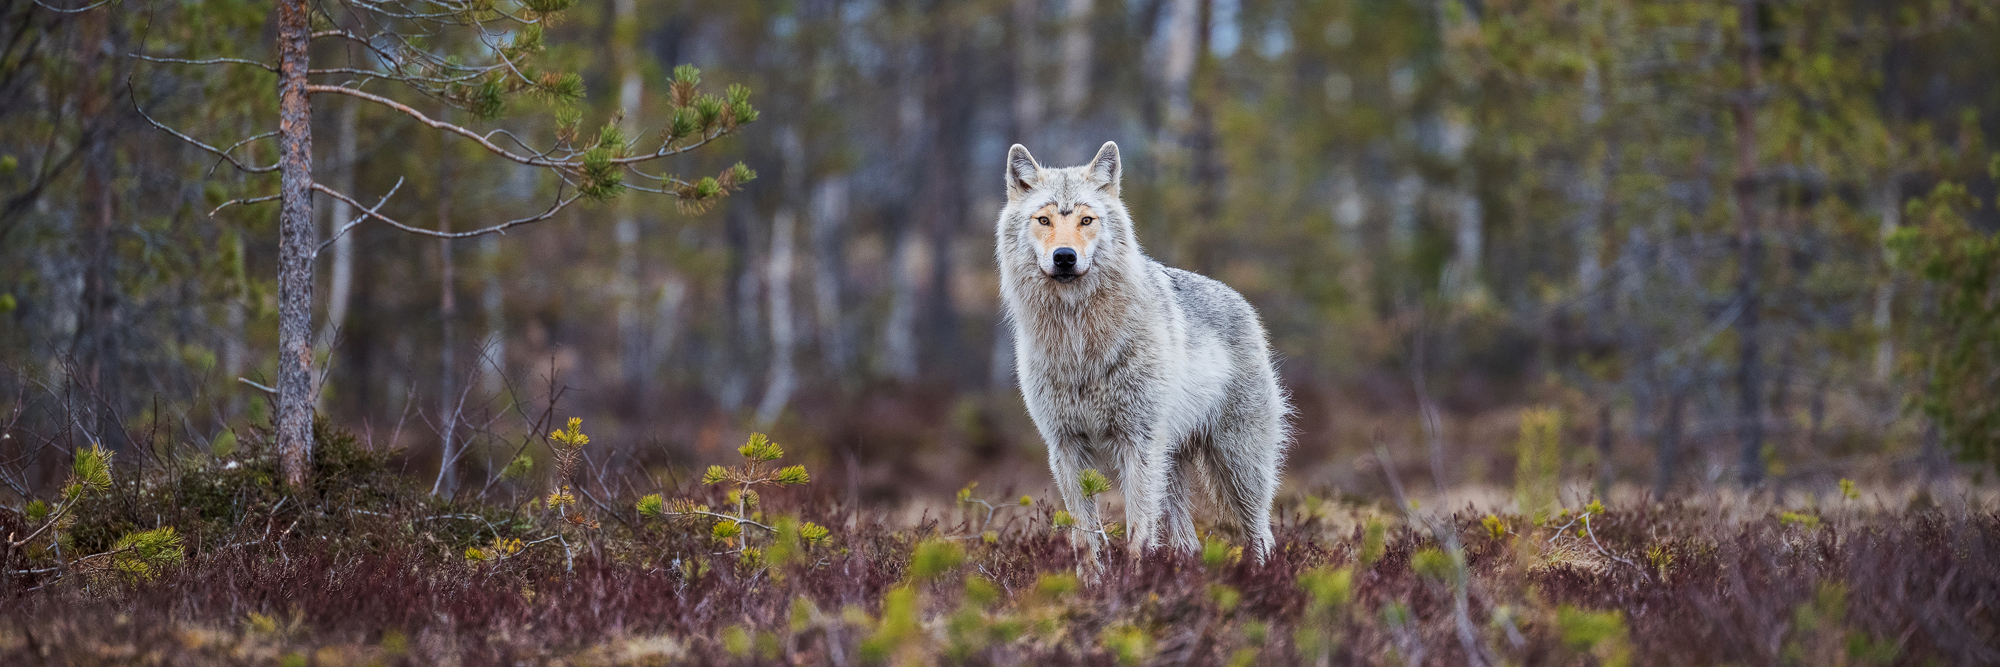 Die Fotoreise nach Kuhmo bietet Tier-Fotografen die Möglichkeit Wölfe, Vielfrasse, Bären, Adler und eventuell sogar Luchse